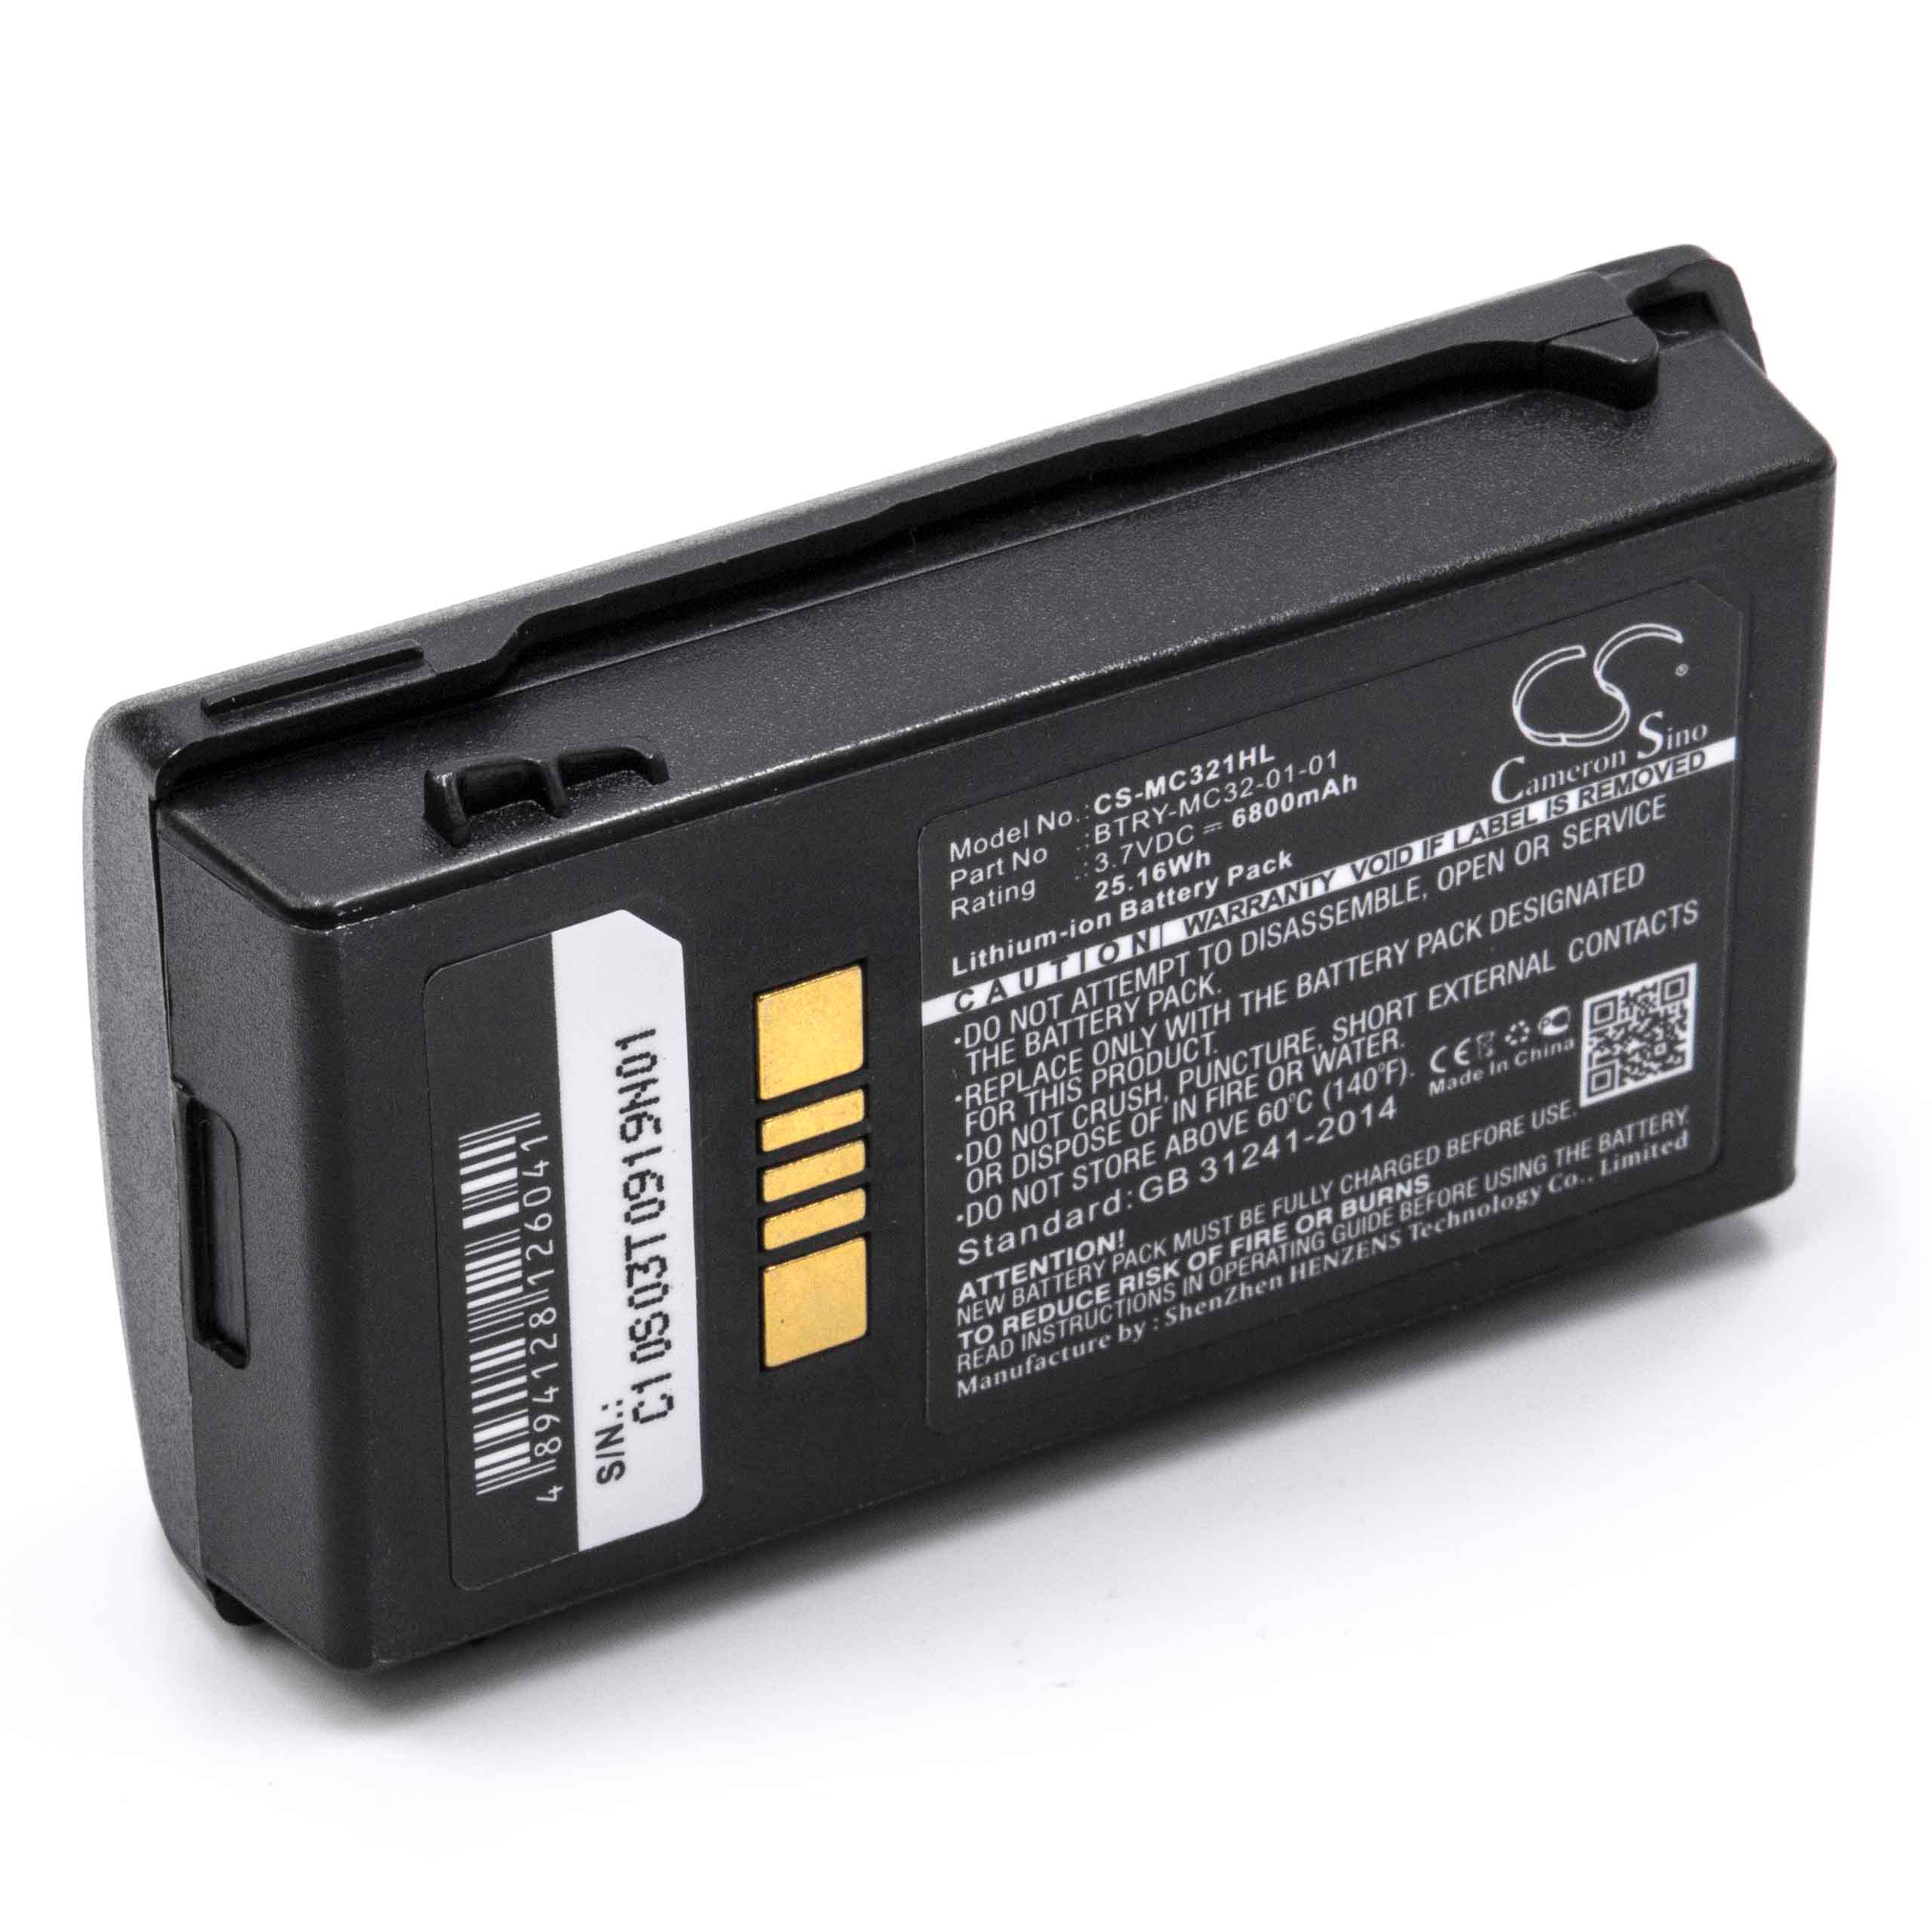 Barcodescanner-Akku als Ersatz für Motorola BTRY-MC32-01-01 - 6800mAh 3,7V Li-Ion